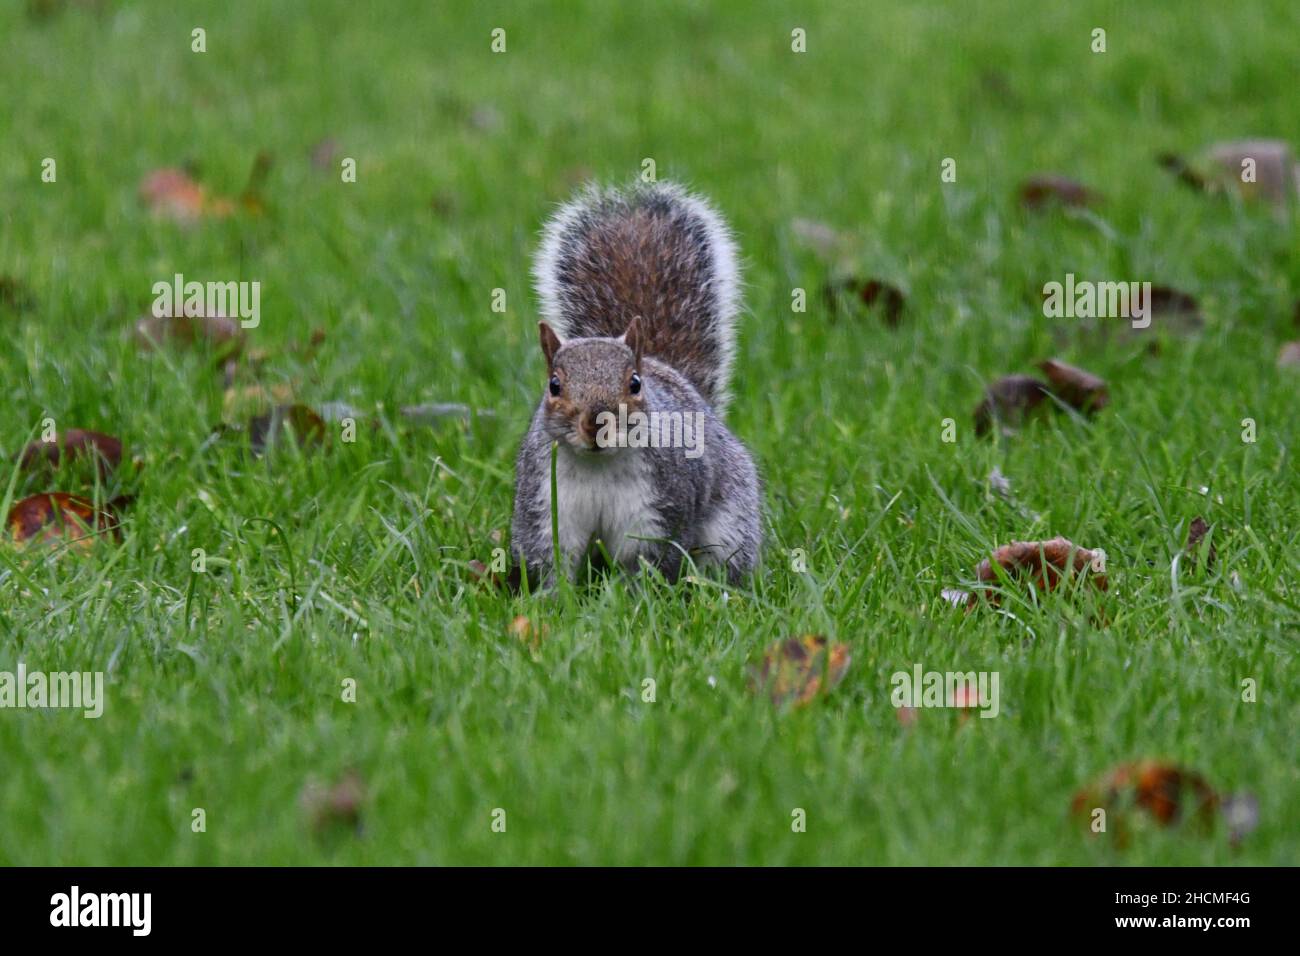 Ein graues Eichhörnchen, Sciurus carolinensis, das mit erhobenem buschigen Schwanz die Kamera anschaut und auf grünem Gras mit herbstlichen Blättern sitzt Stockfoto